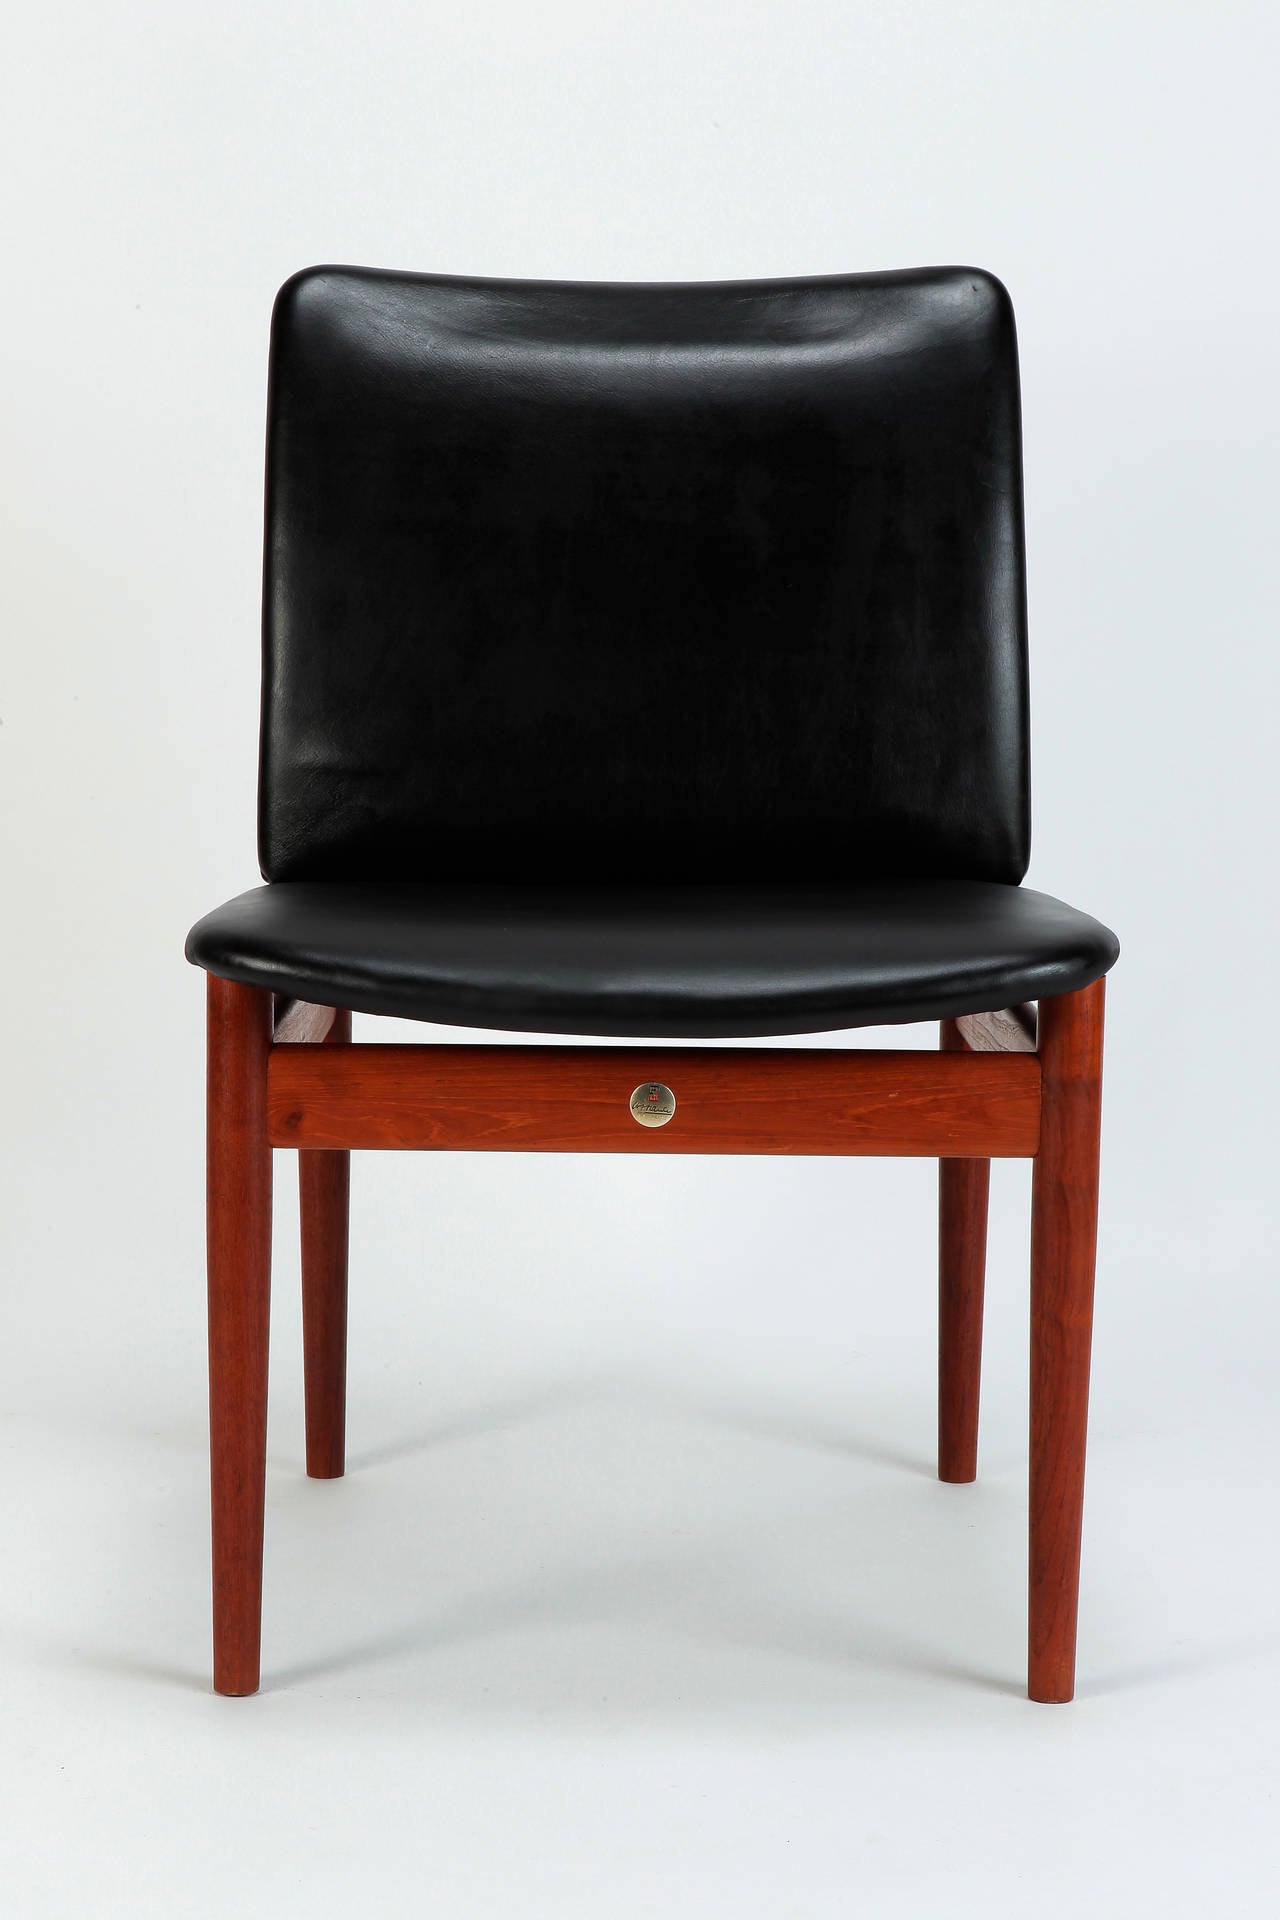 Mid-Century Modern Danish Teak Leather Chair Model 191 by Finn Juhl